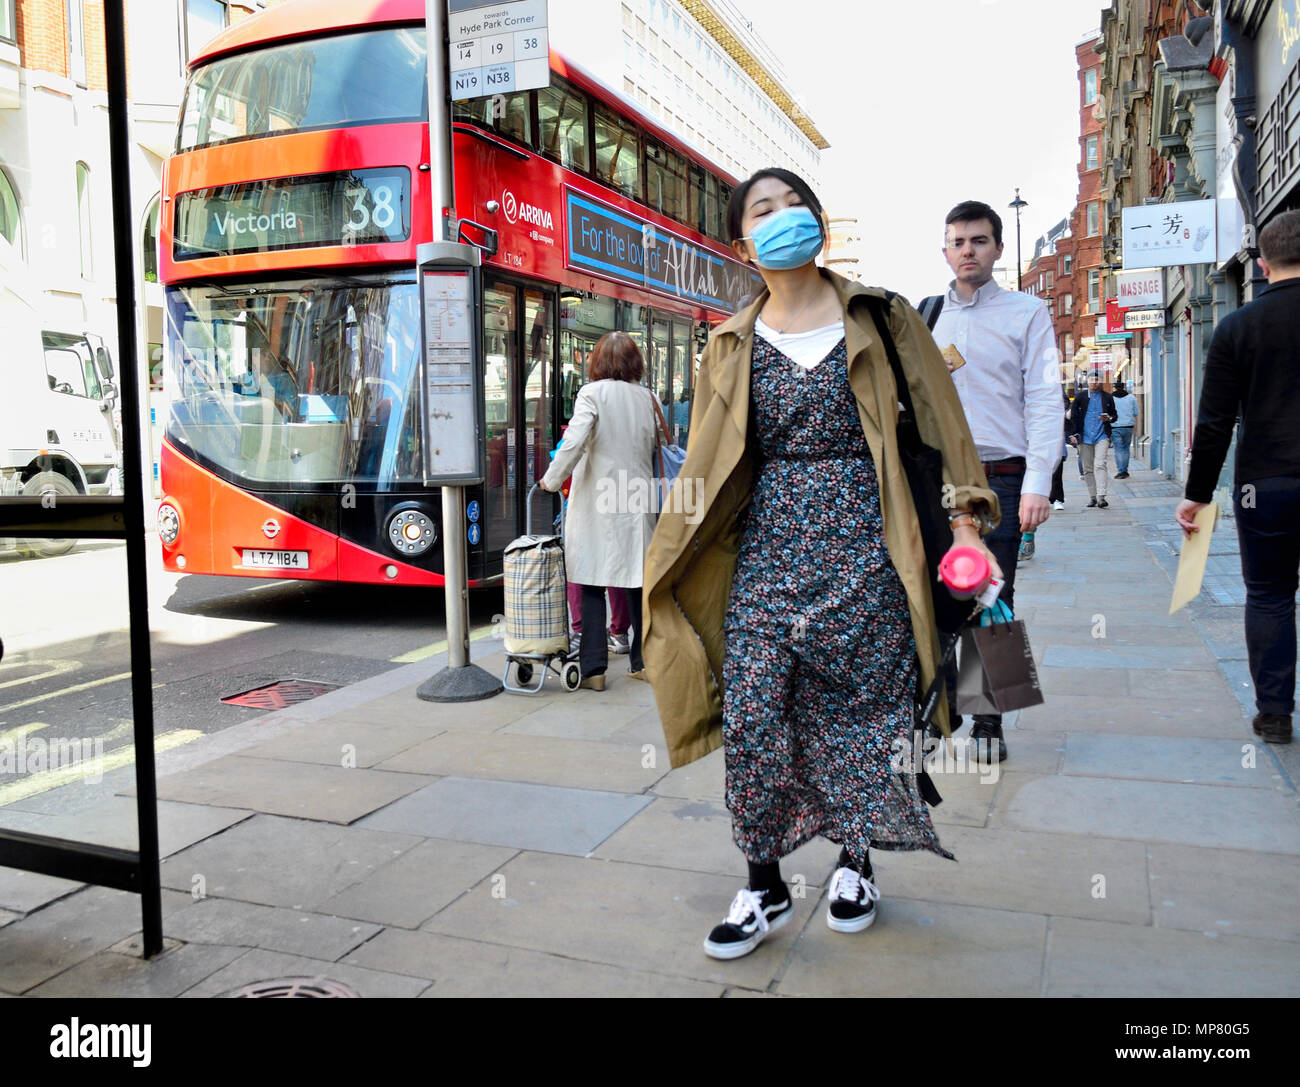 Japanische Frau trägt eine Gesichtsmaske in Central London, England, UK  Stockfotografie - Alamy